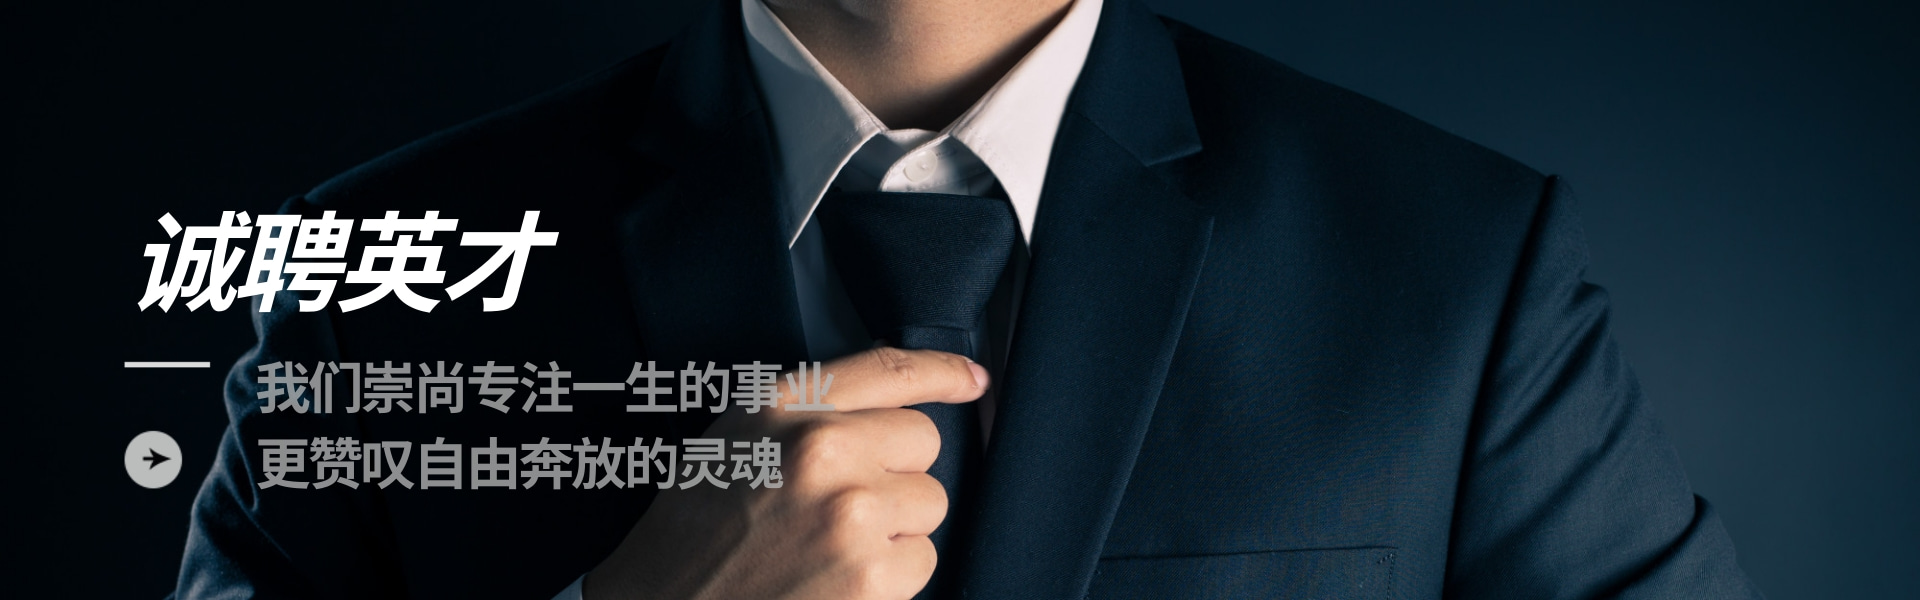 深圳市方圆智汇科技有限公司招聘海报